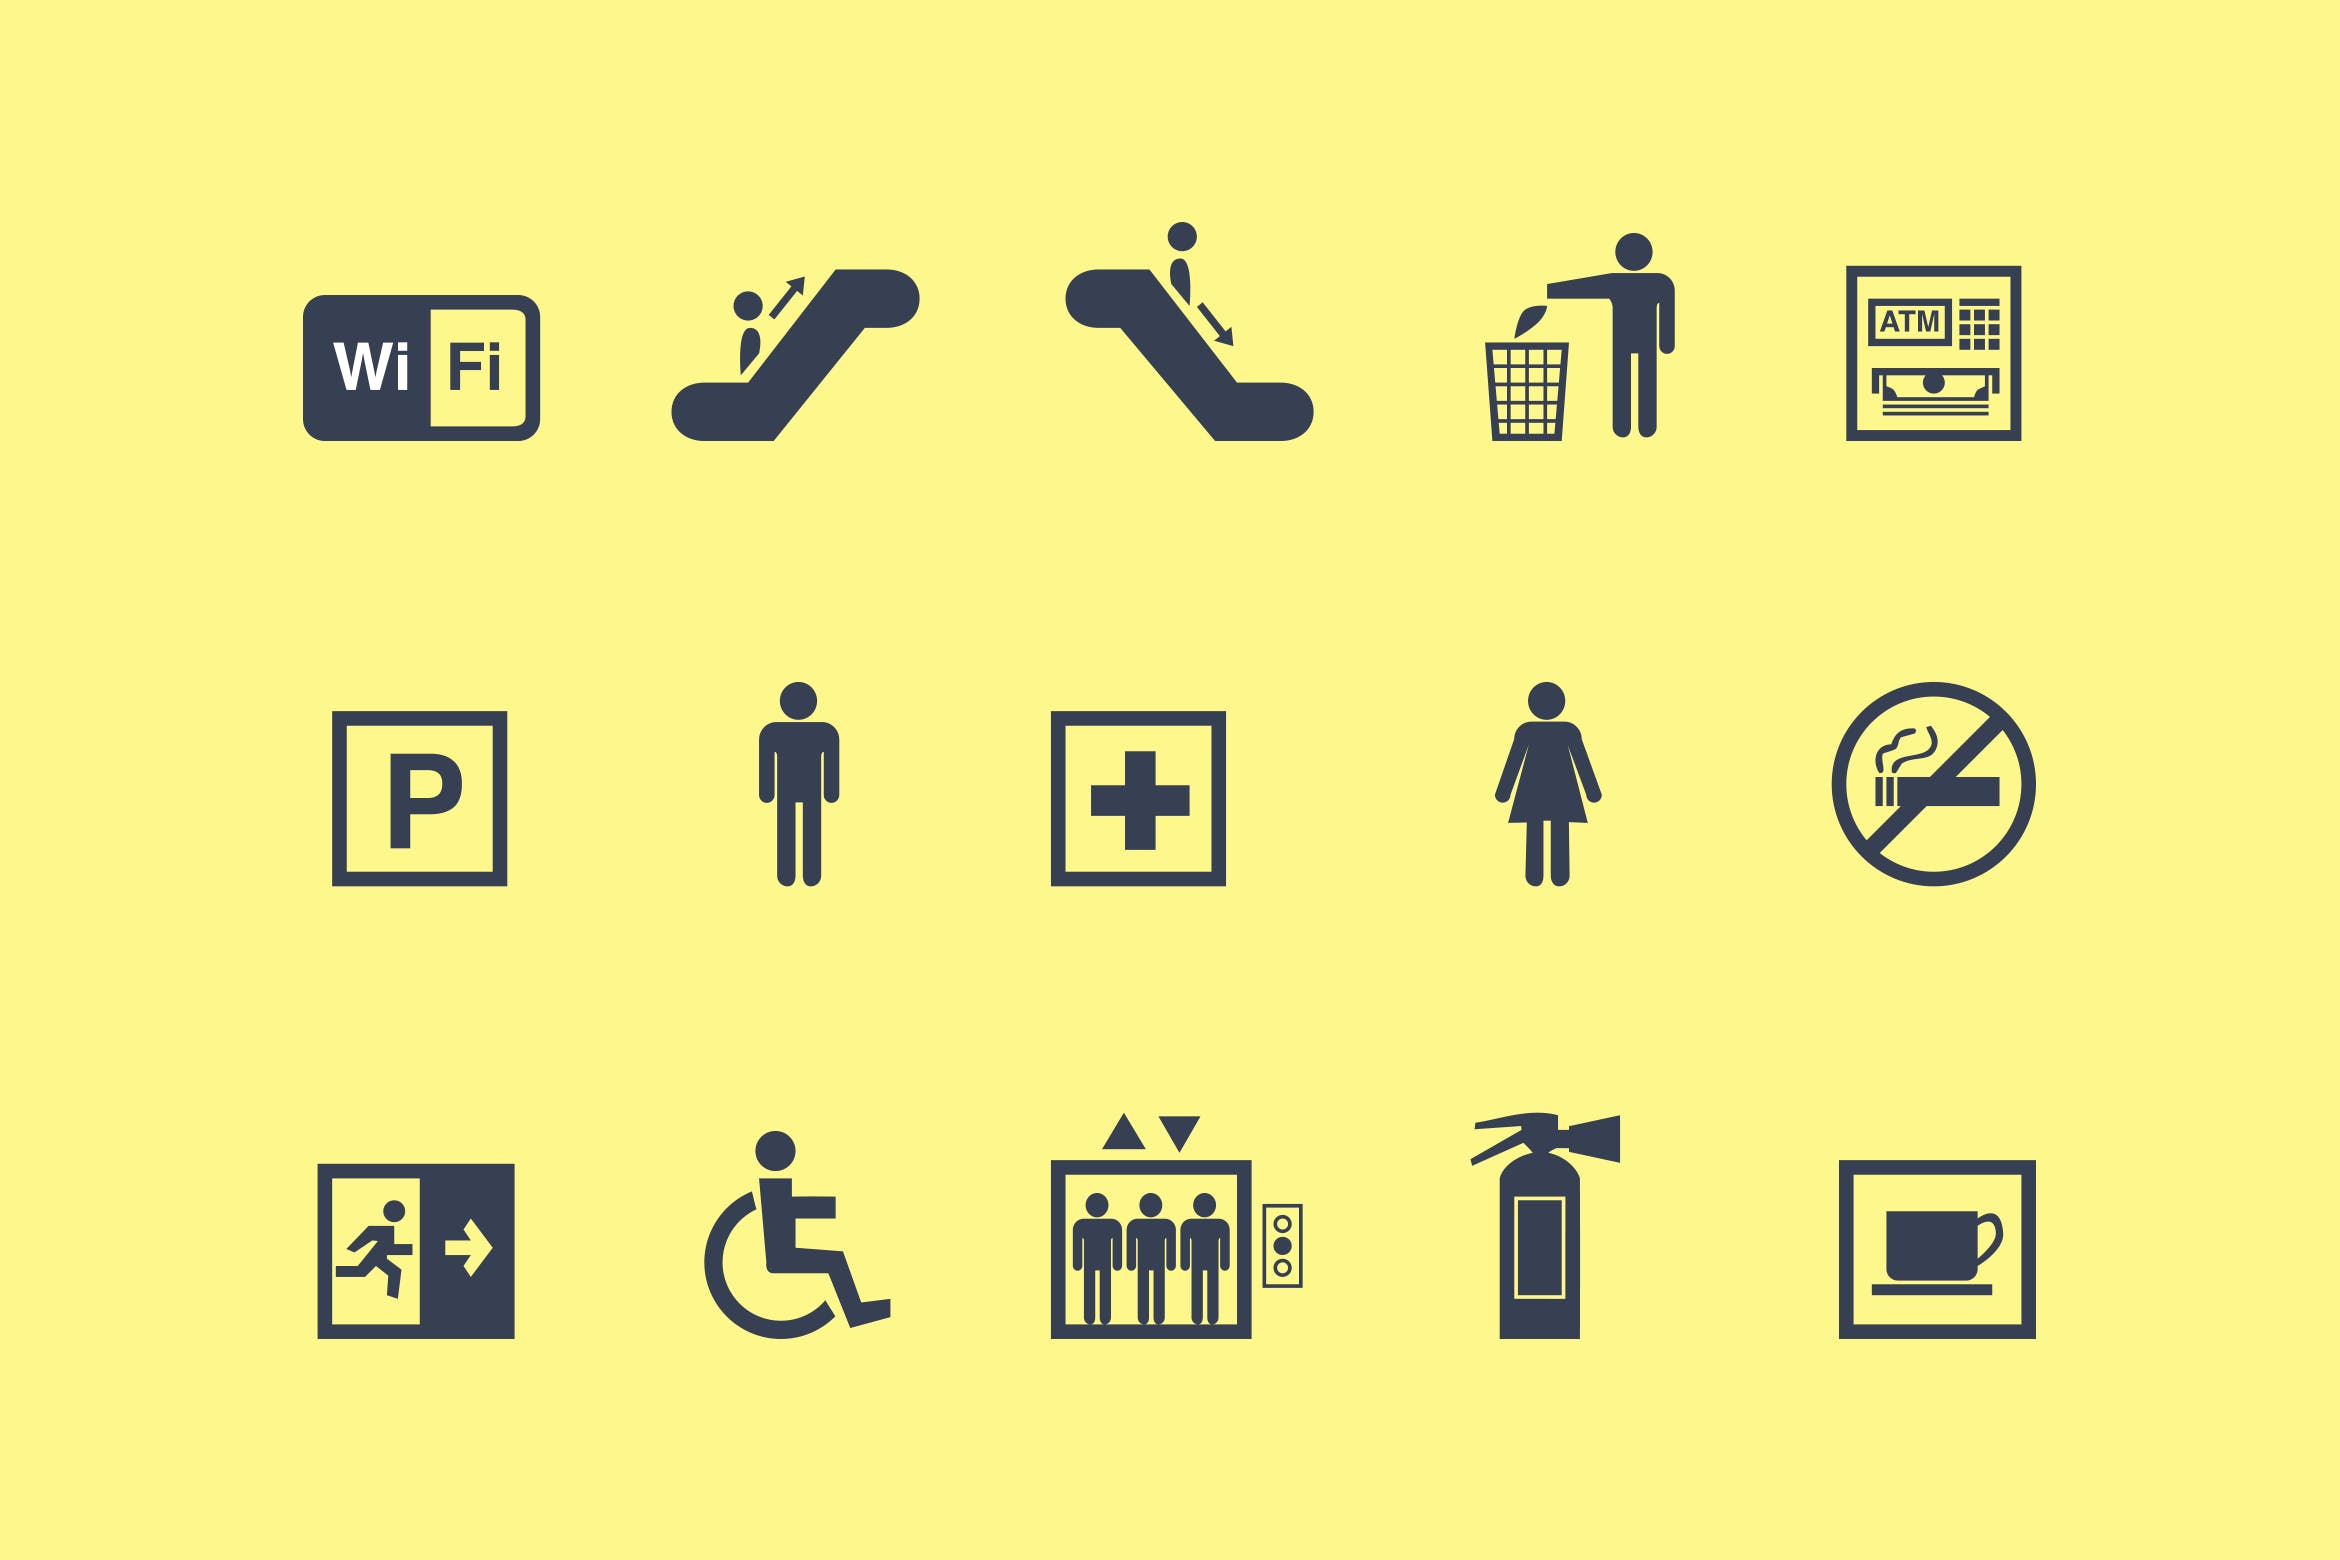 15枚公共标志矢量素材库精选图标 15 Public Sign Icons插图